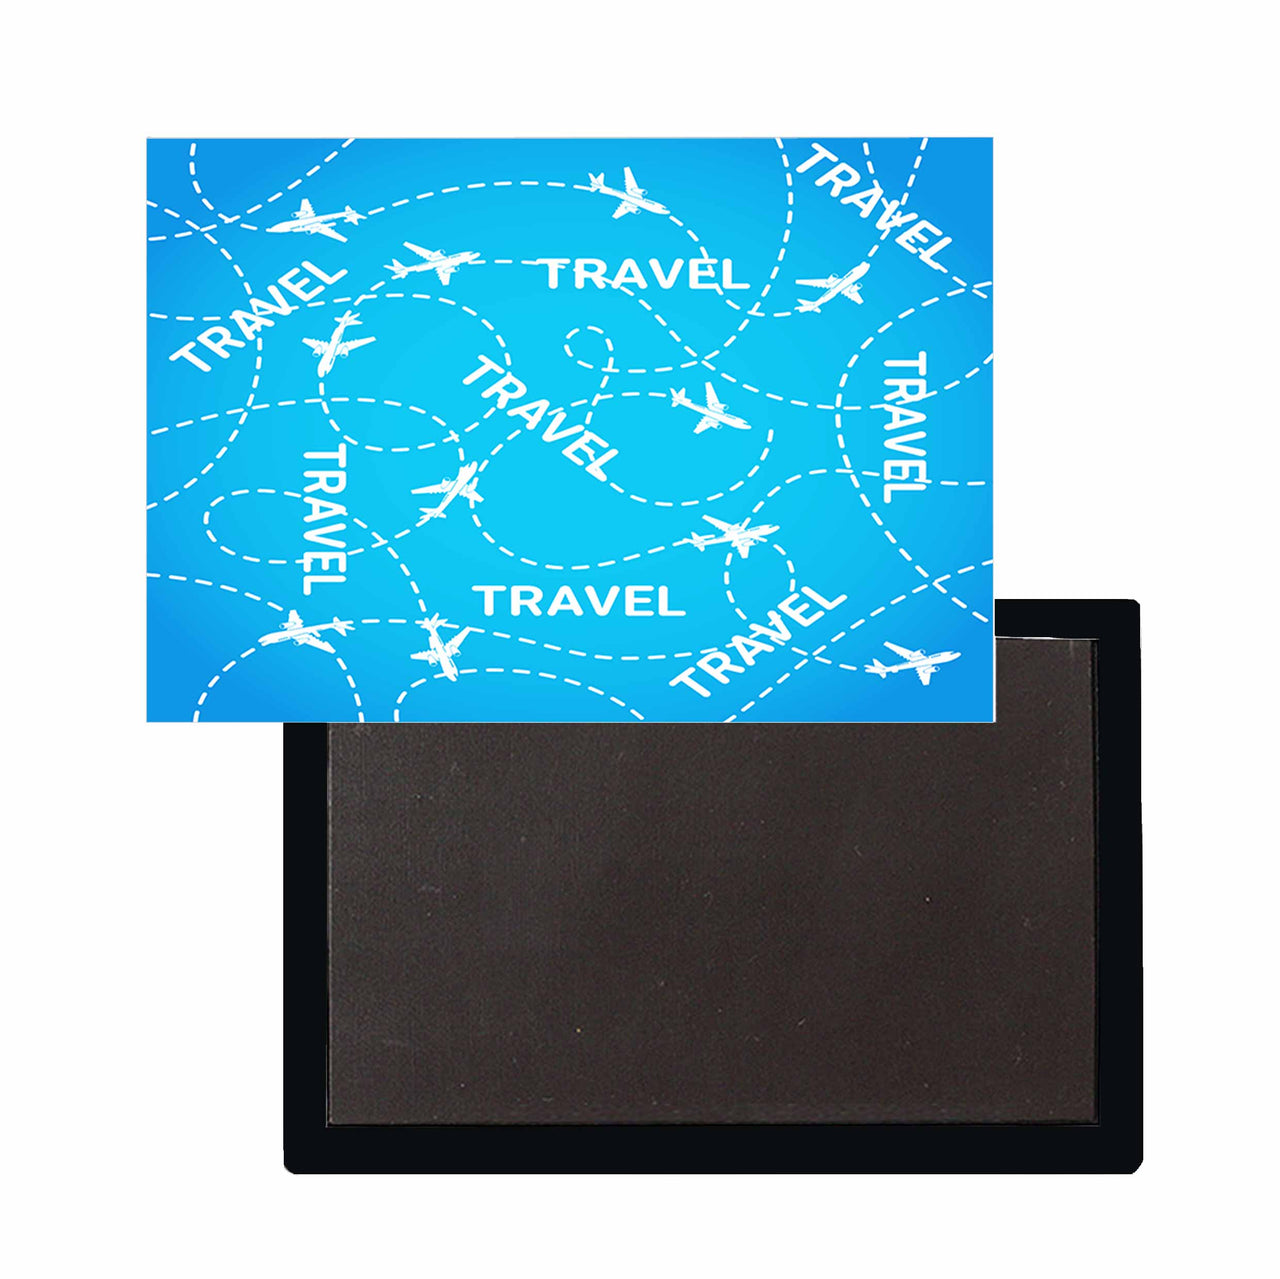 Travel & Planes Designed Magnets